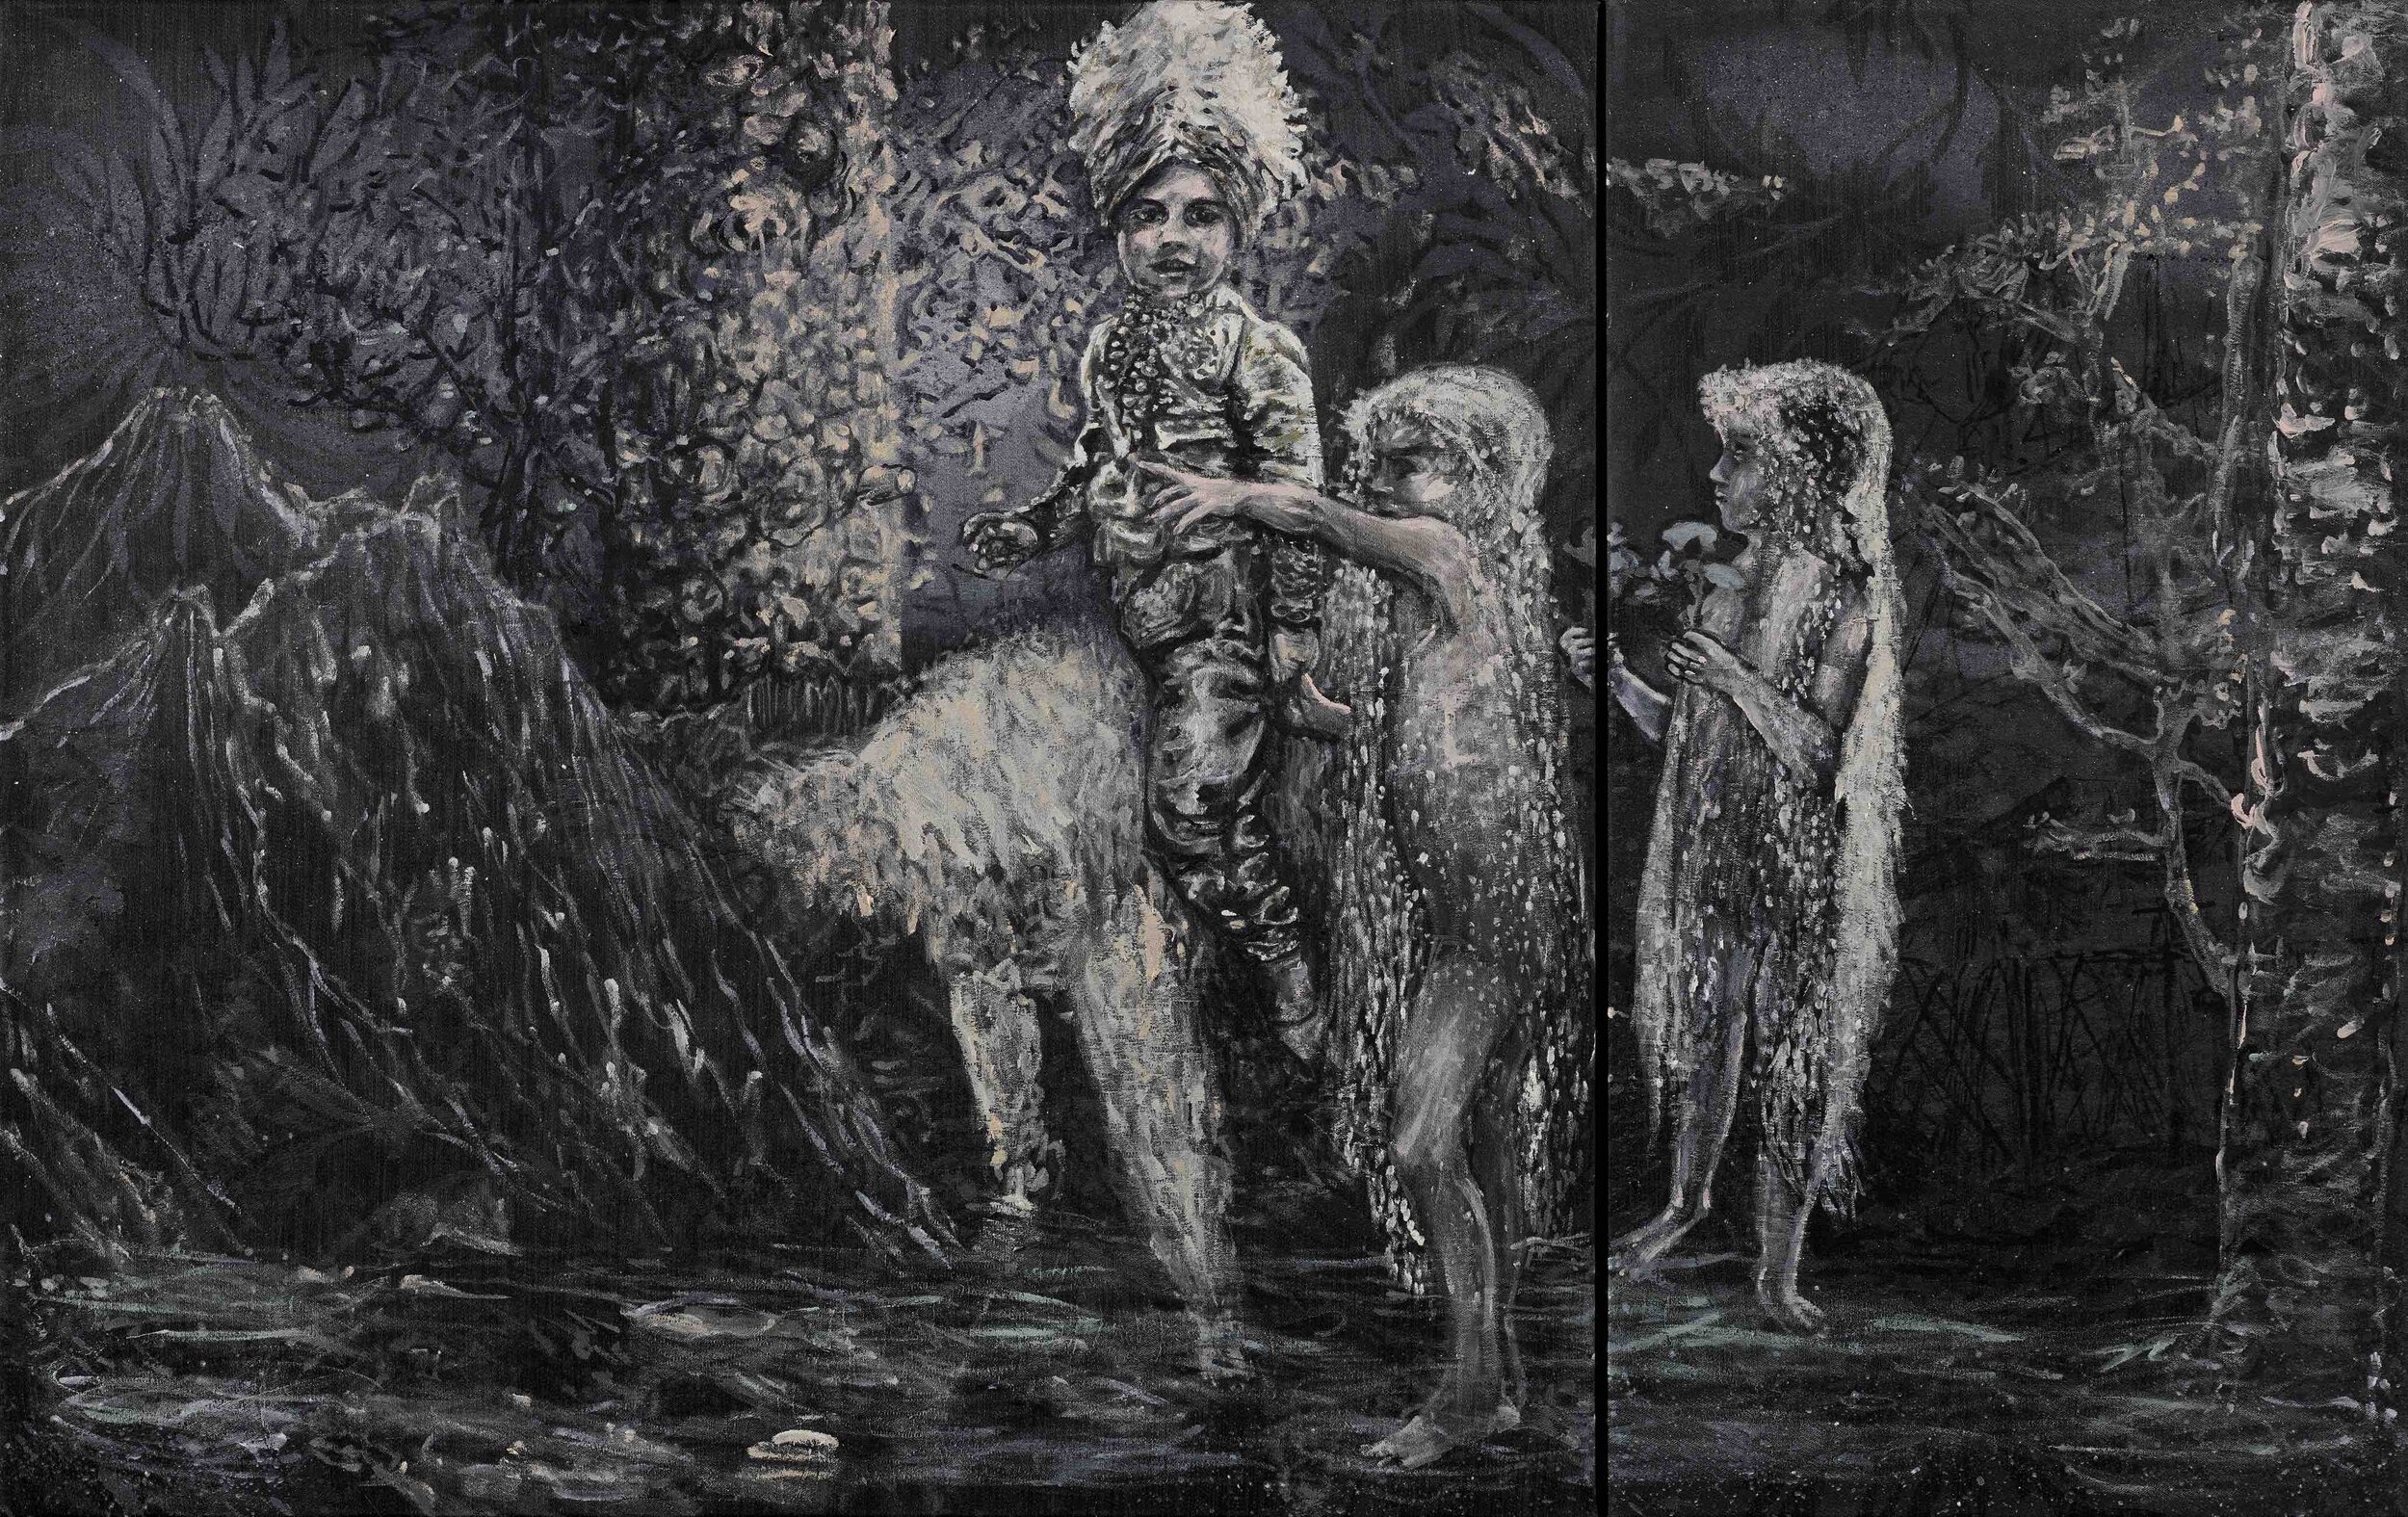 CANIS MAJOR, 2017, acryl on canvas, 80 cm x 121 cm